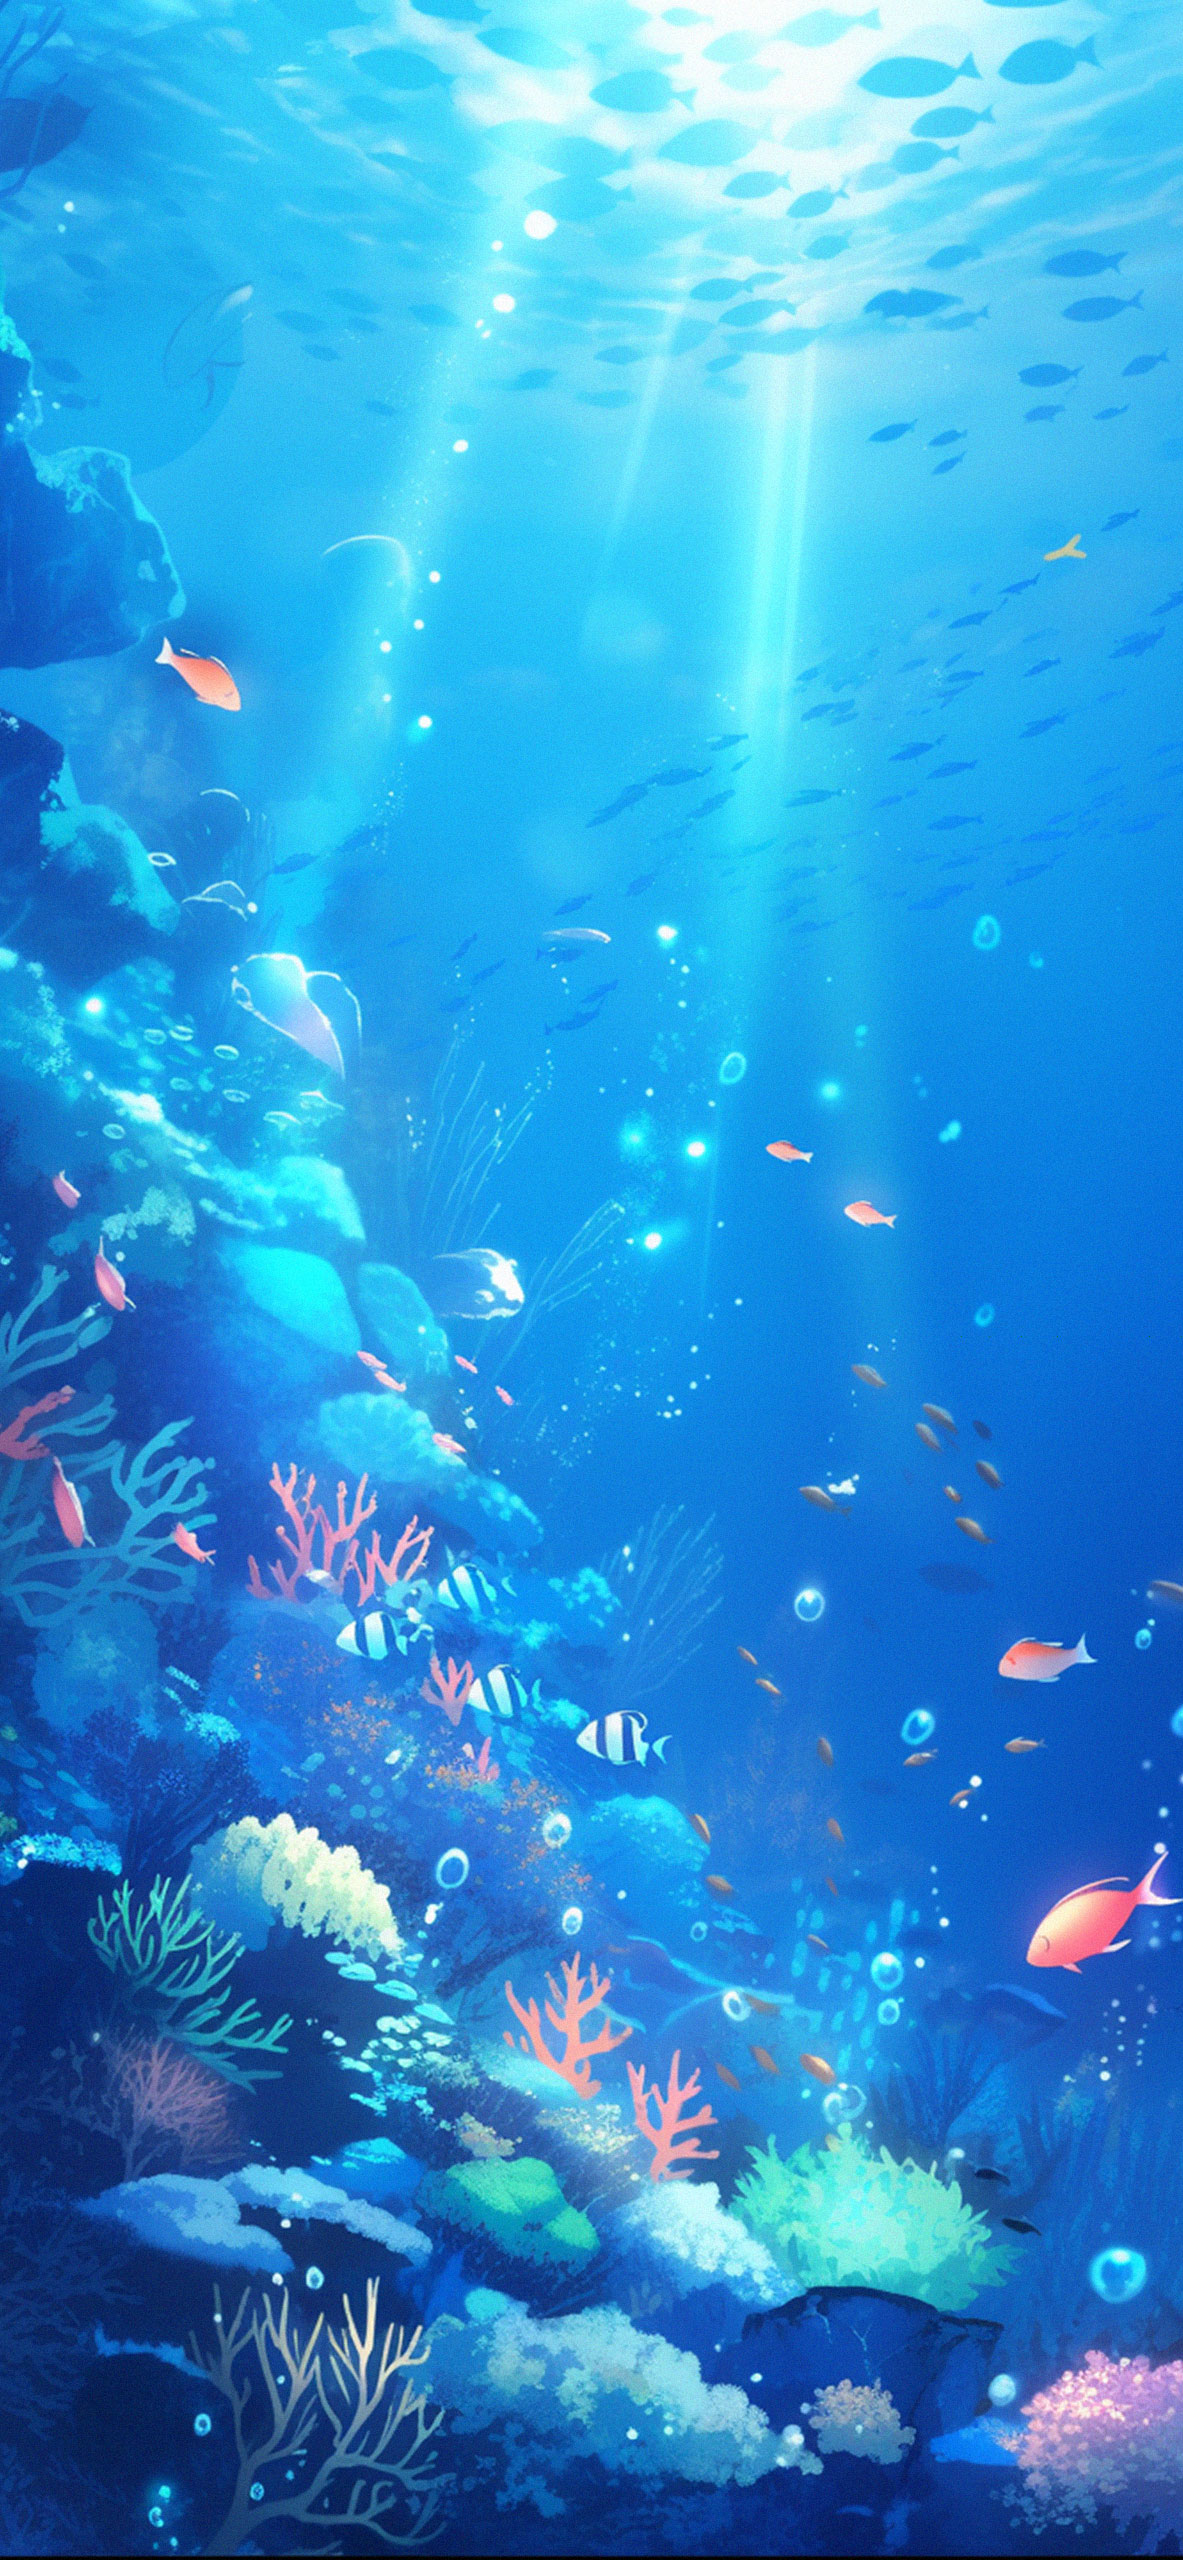 Underwater Corals & Fish Wallpaper Underwater Wallpaper for iP